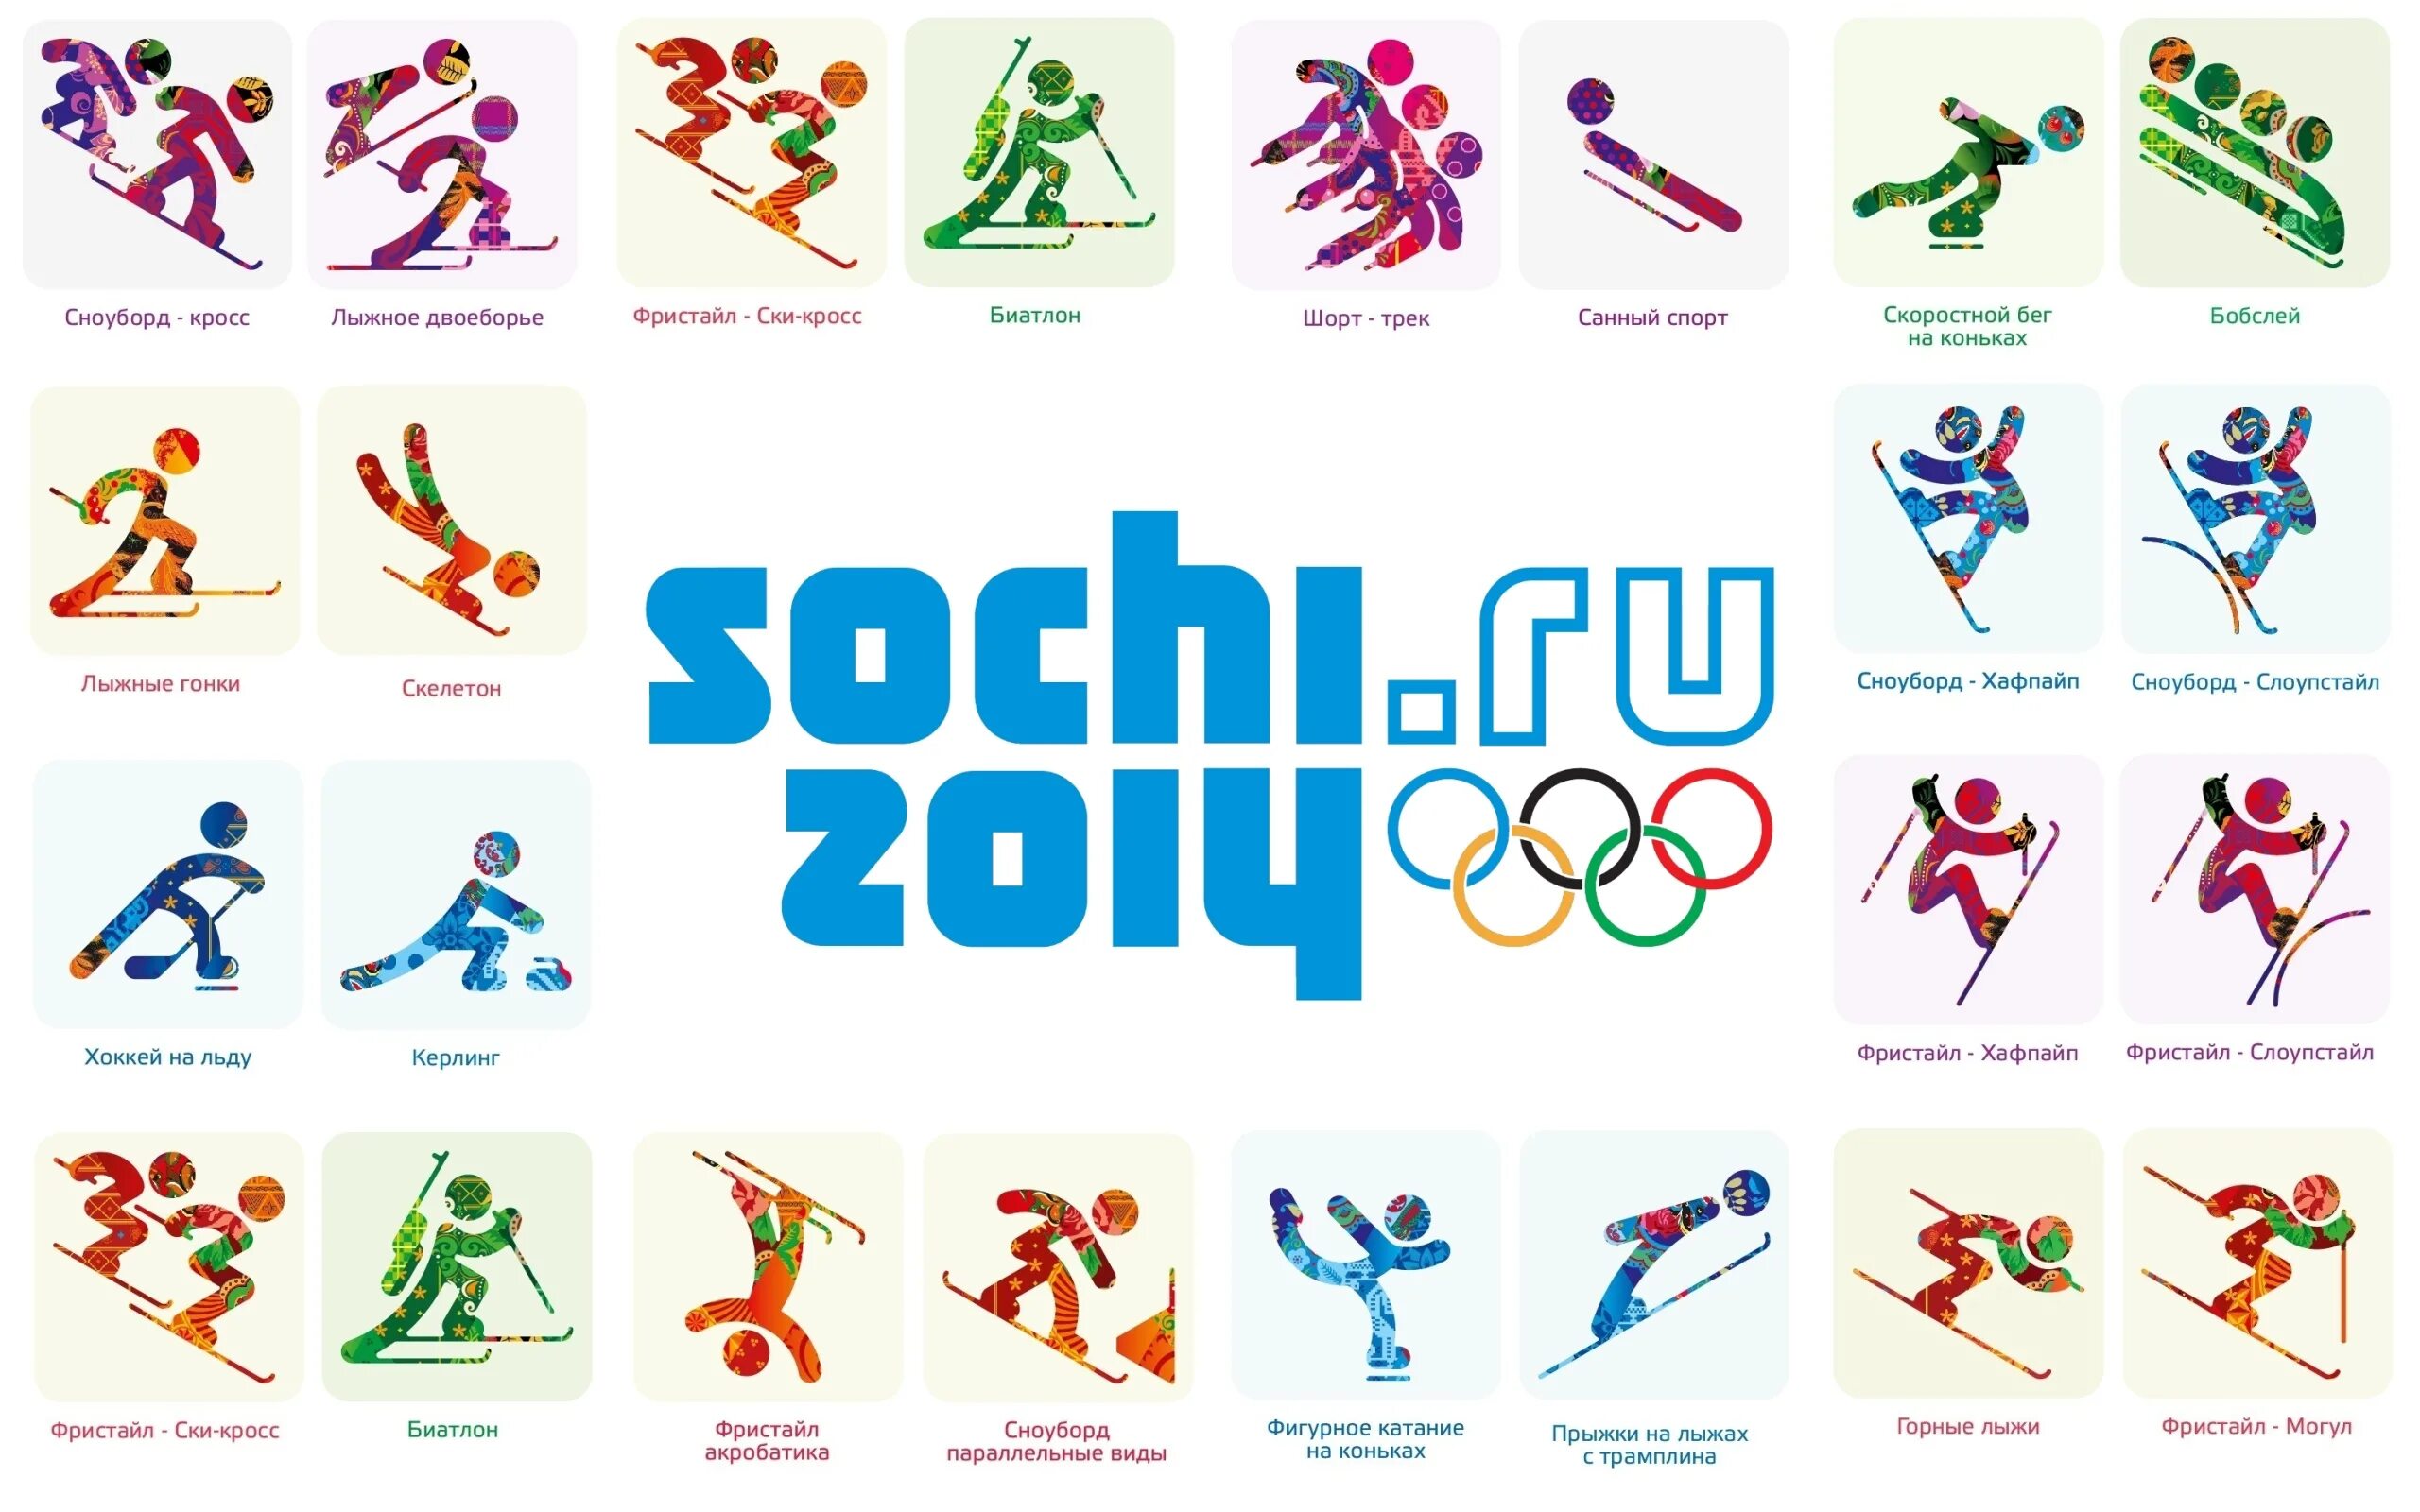 Олимпийские игры 2014 виды игр